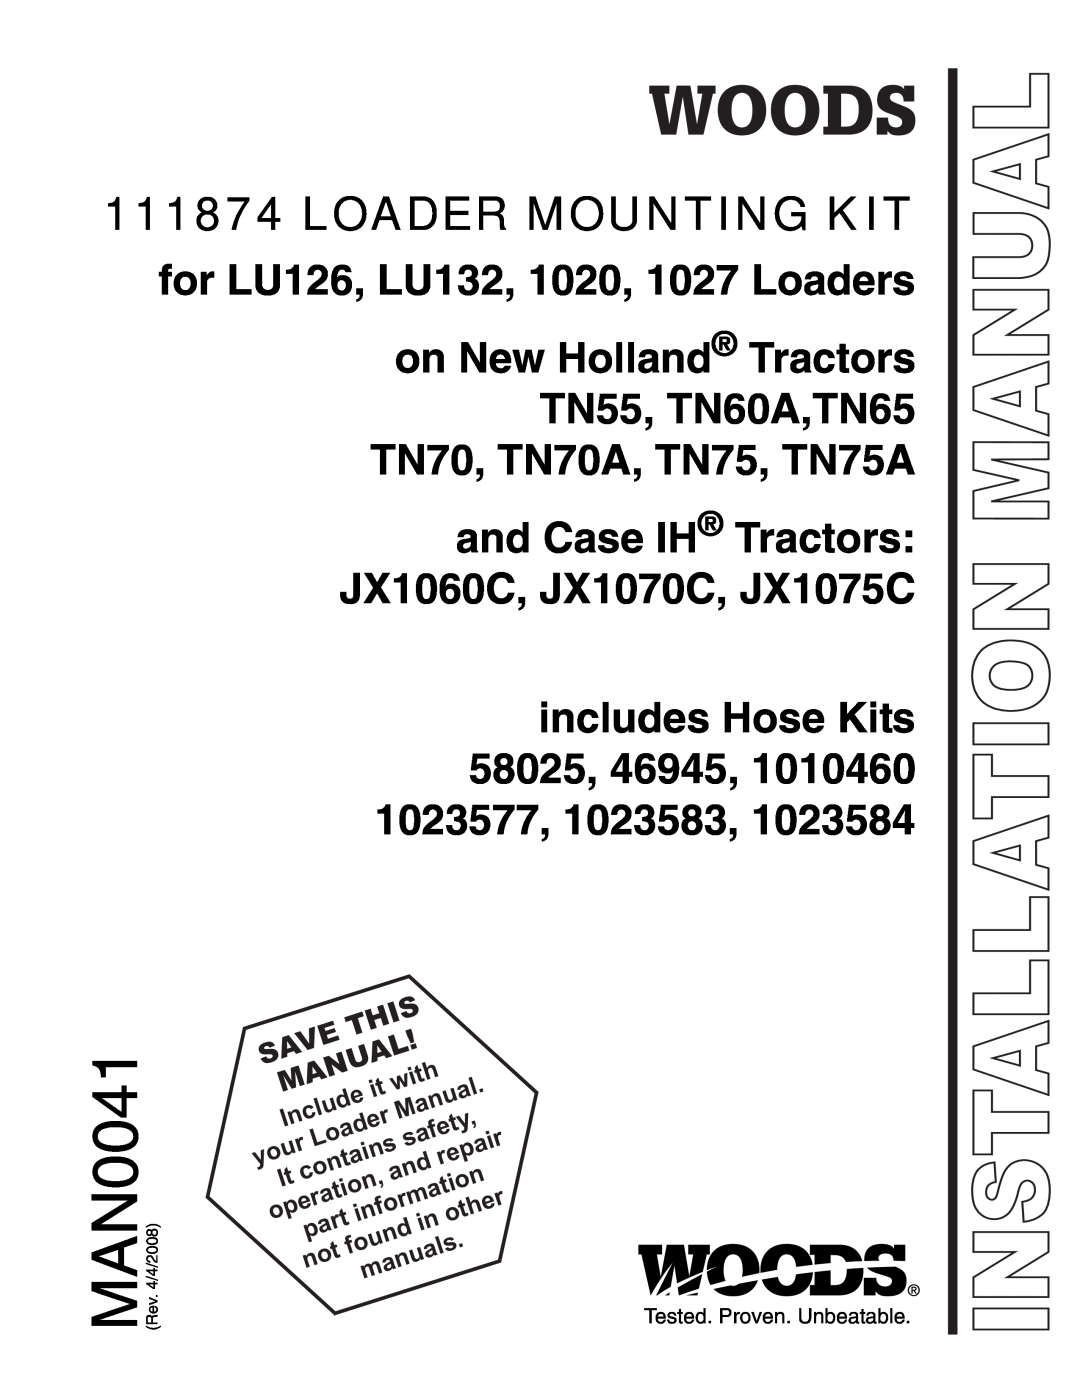 Woods Equipment LU126 installation manual MAN0041, Loader Mounting Kit 